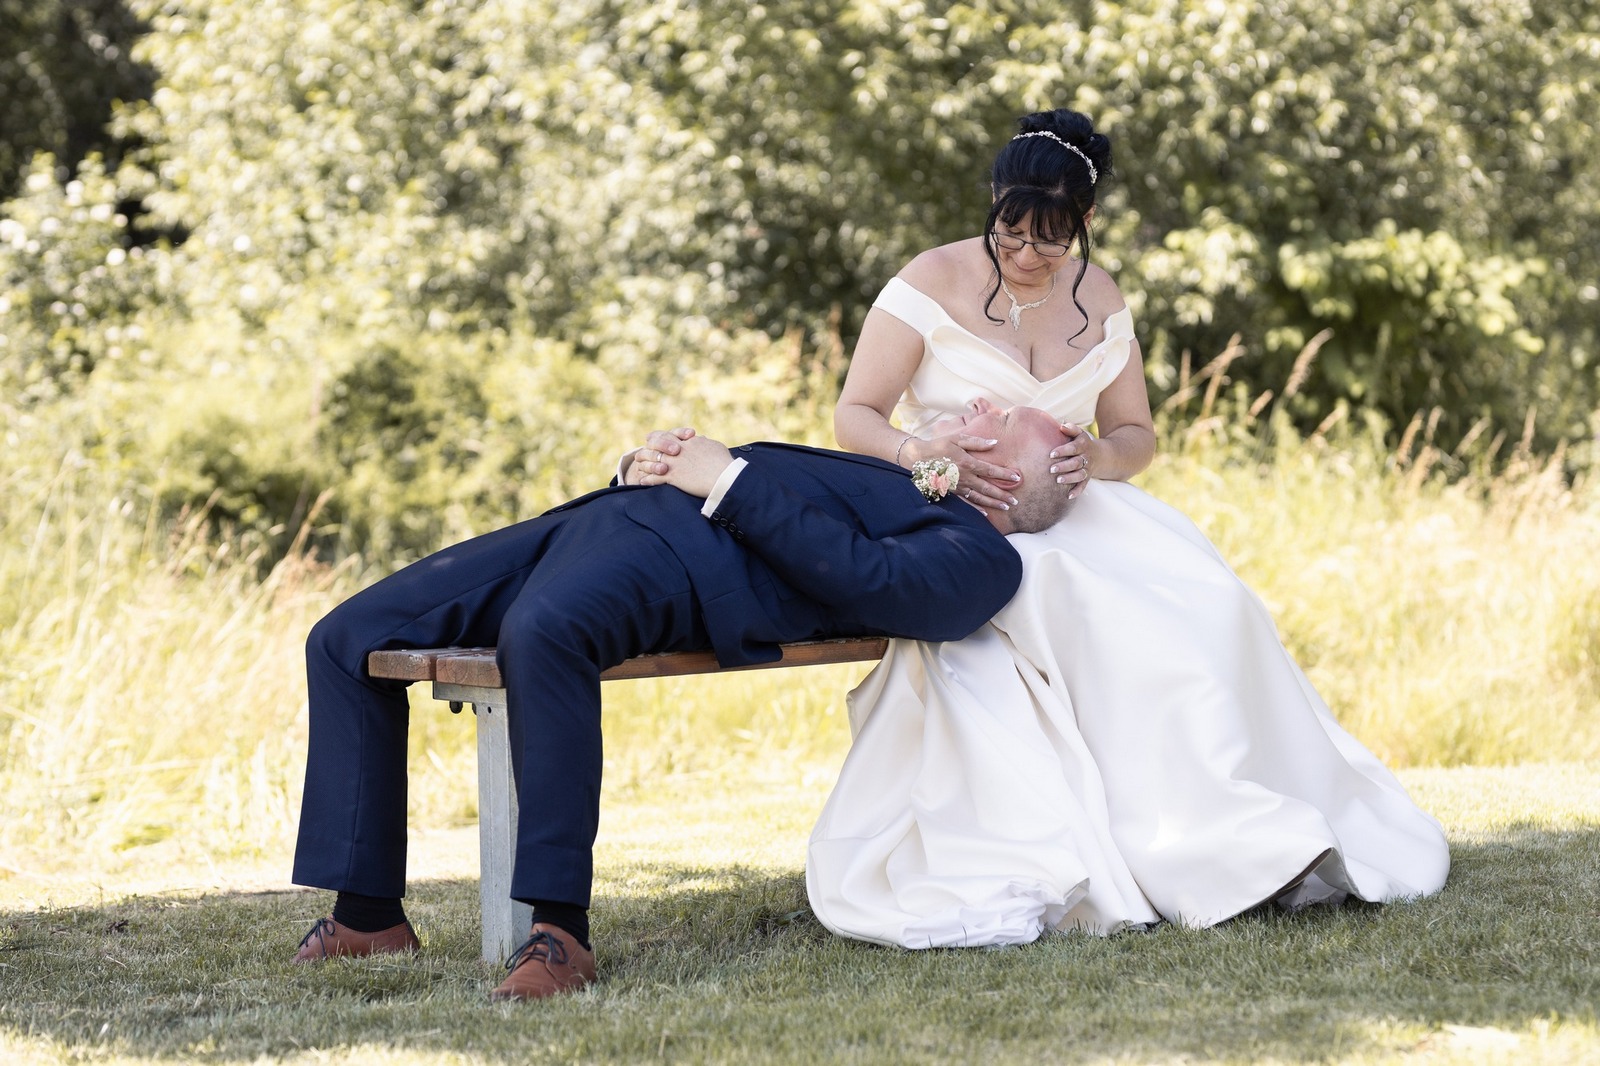 Svatba Hostinec u Vrbů ve Stašově, Hořovice ženich a nevěsta na lavičce